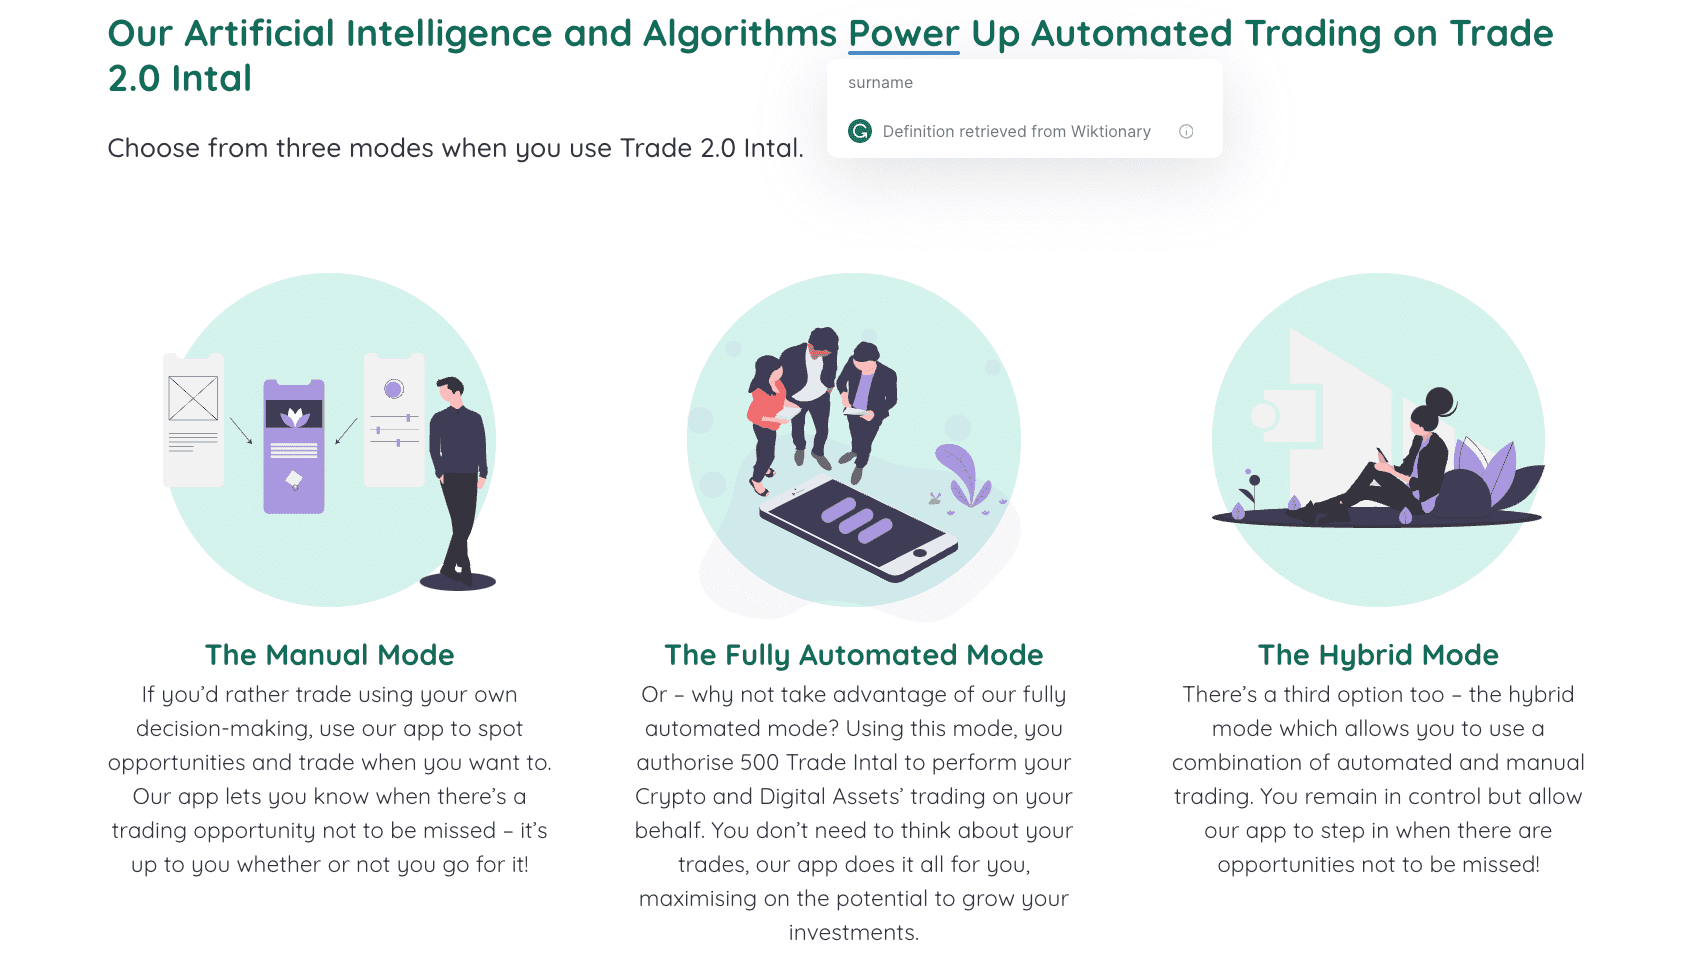 Η Τεχνητή Νοημοσύνη και οι Αλγόριθμοί μας Ενισχύουν Αυτοματοποιημένες Συναλλαγές στο Trade 2.0 Intal  